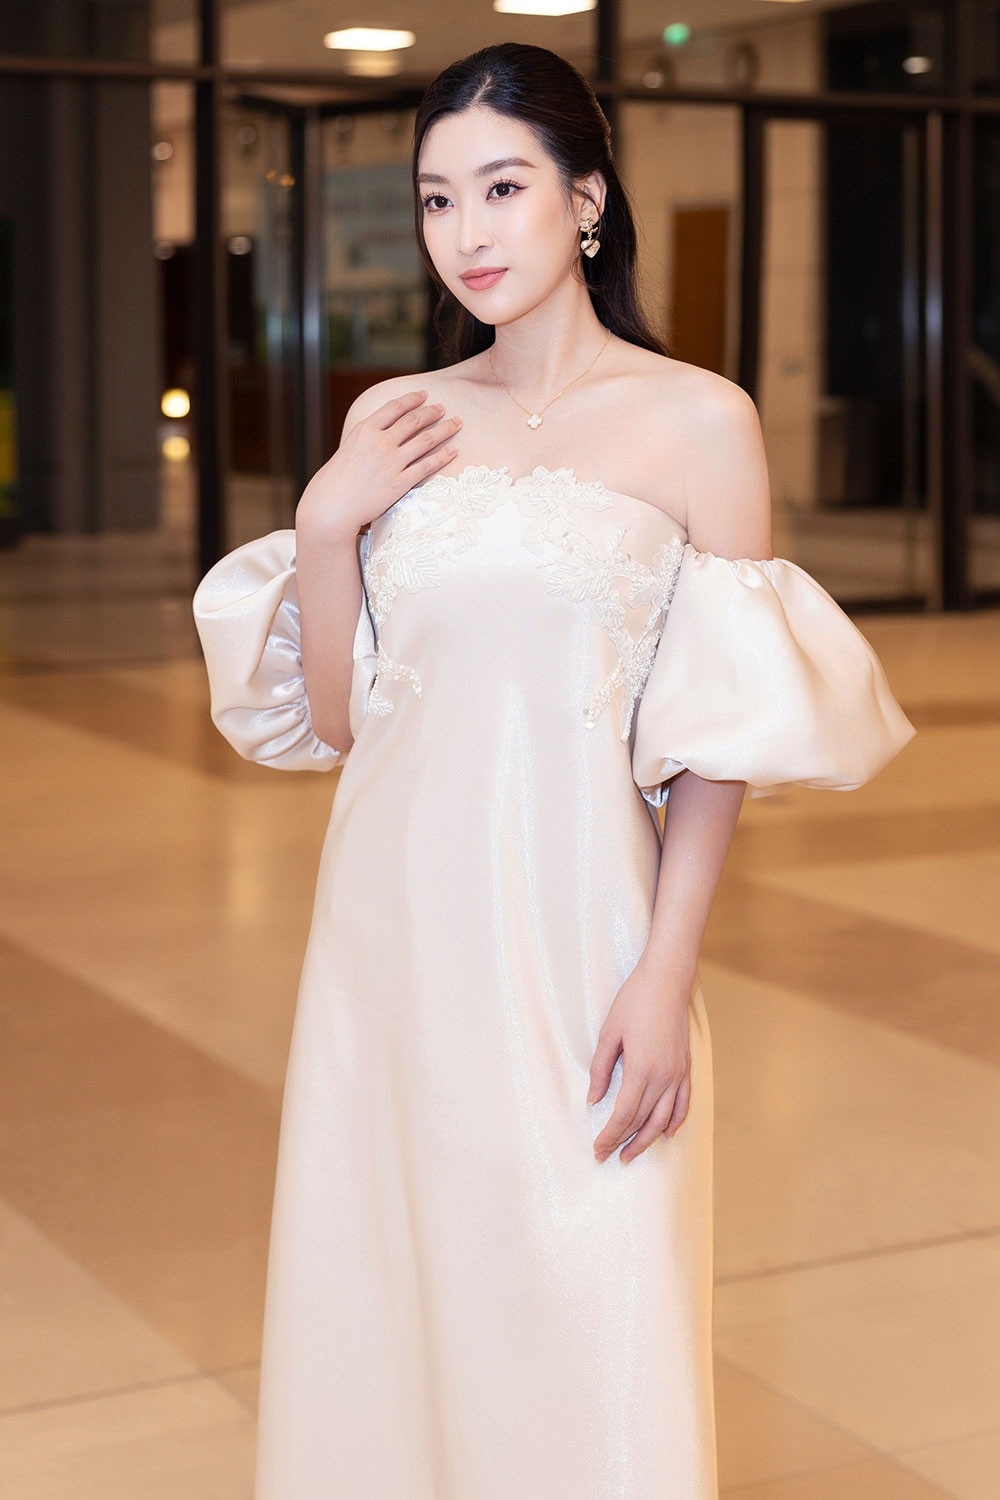 Chuyện showbiz: Hoa hậu Đỗ Mỹ Linh tái xuất sau sinh